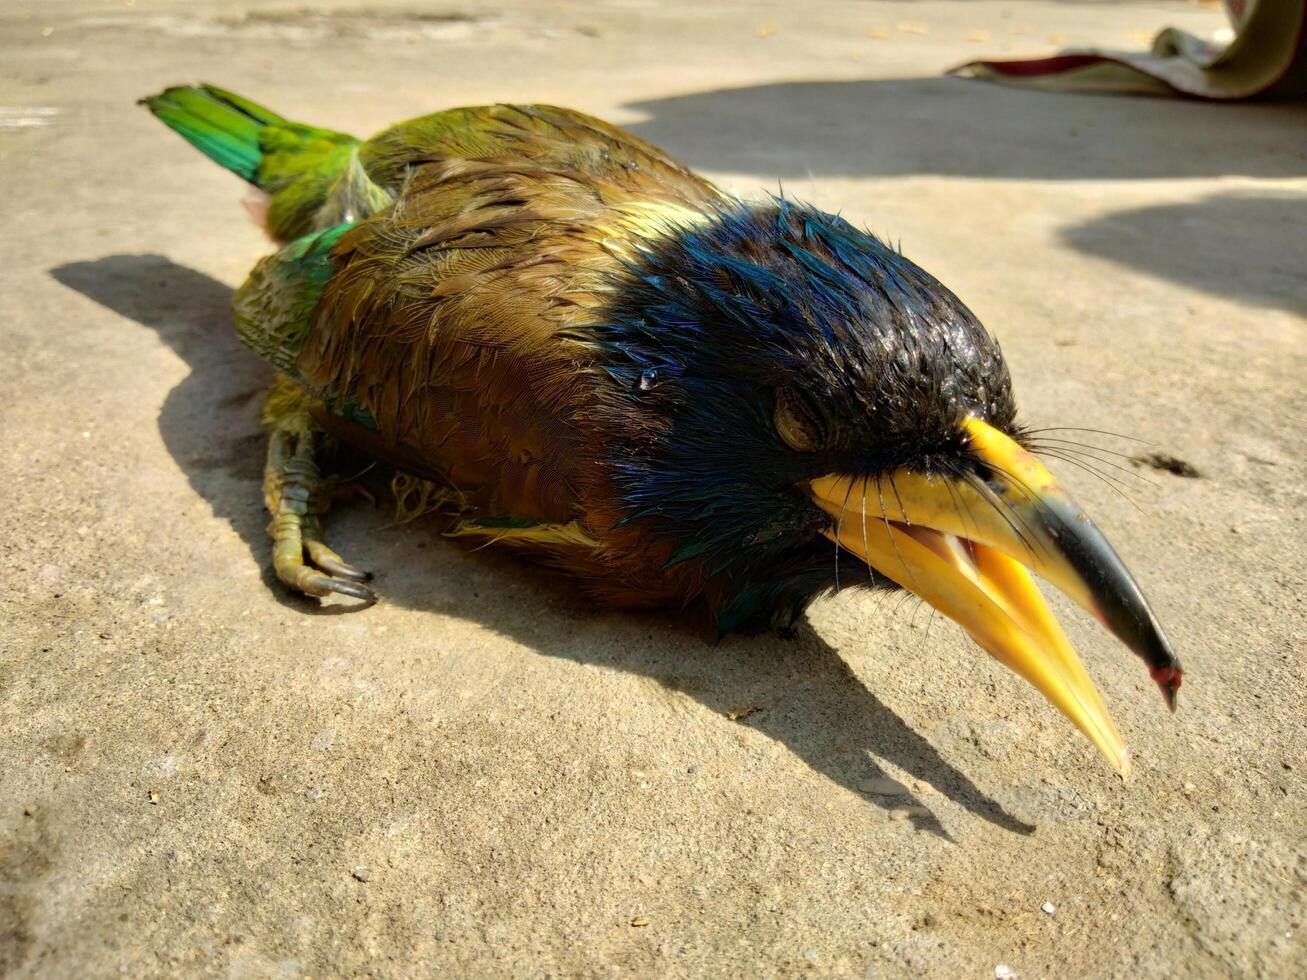 une oiseau cette décédés dû à temps chaud dans cette monde photo